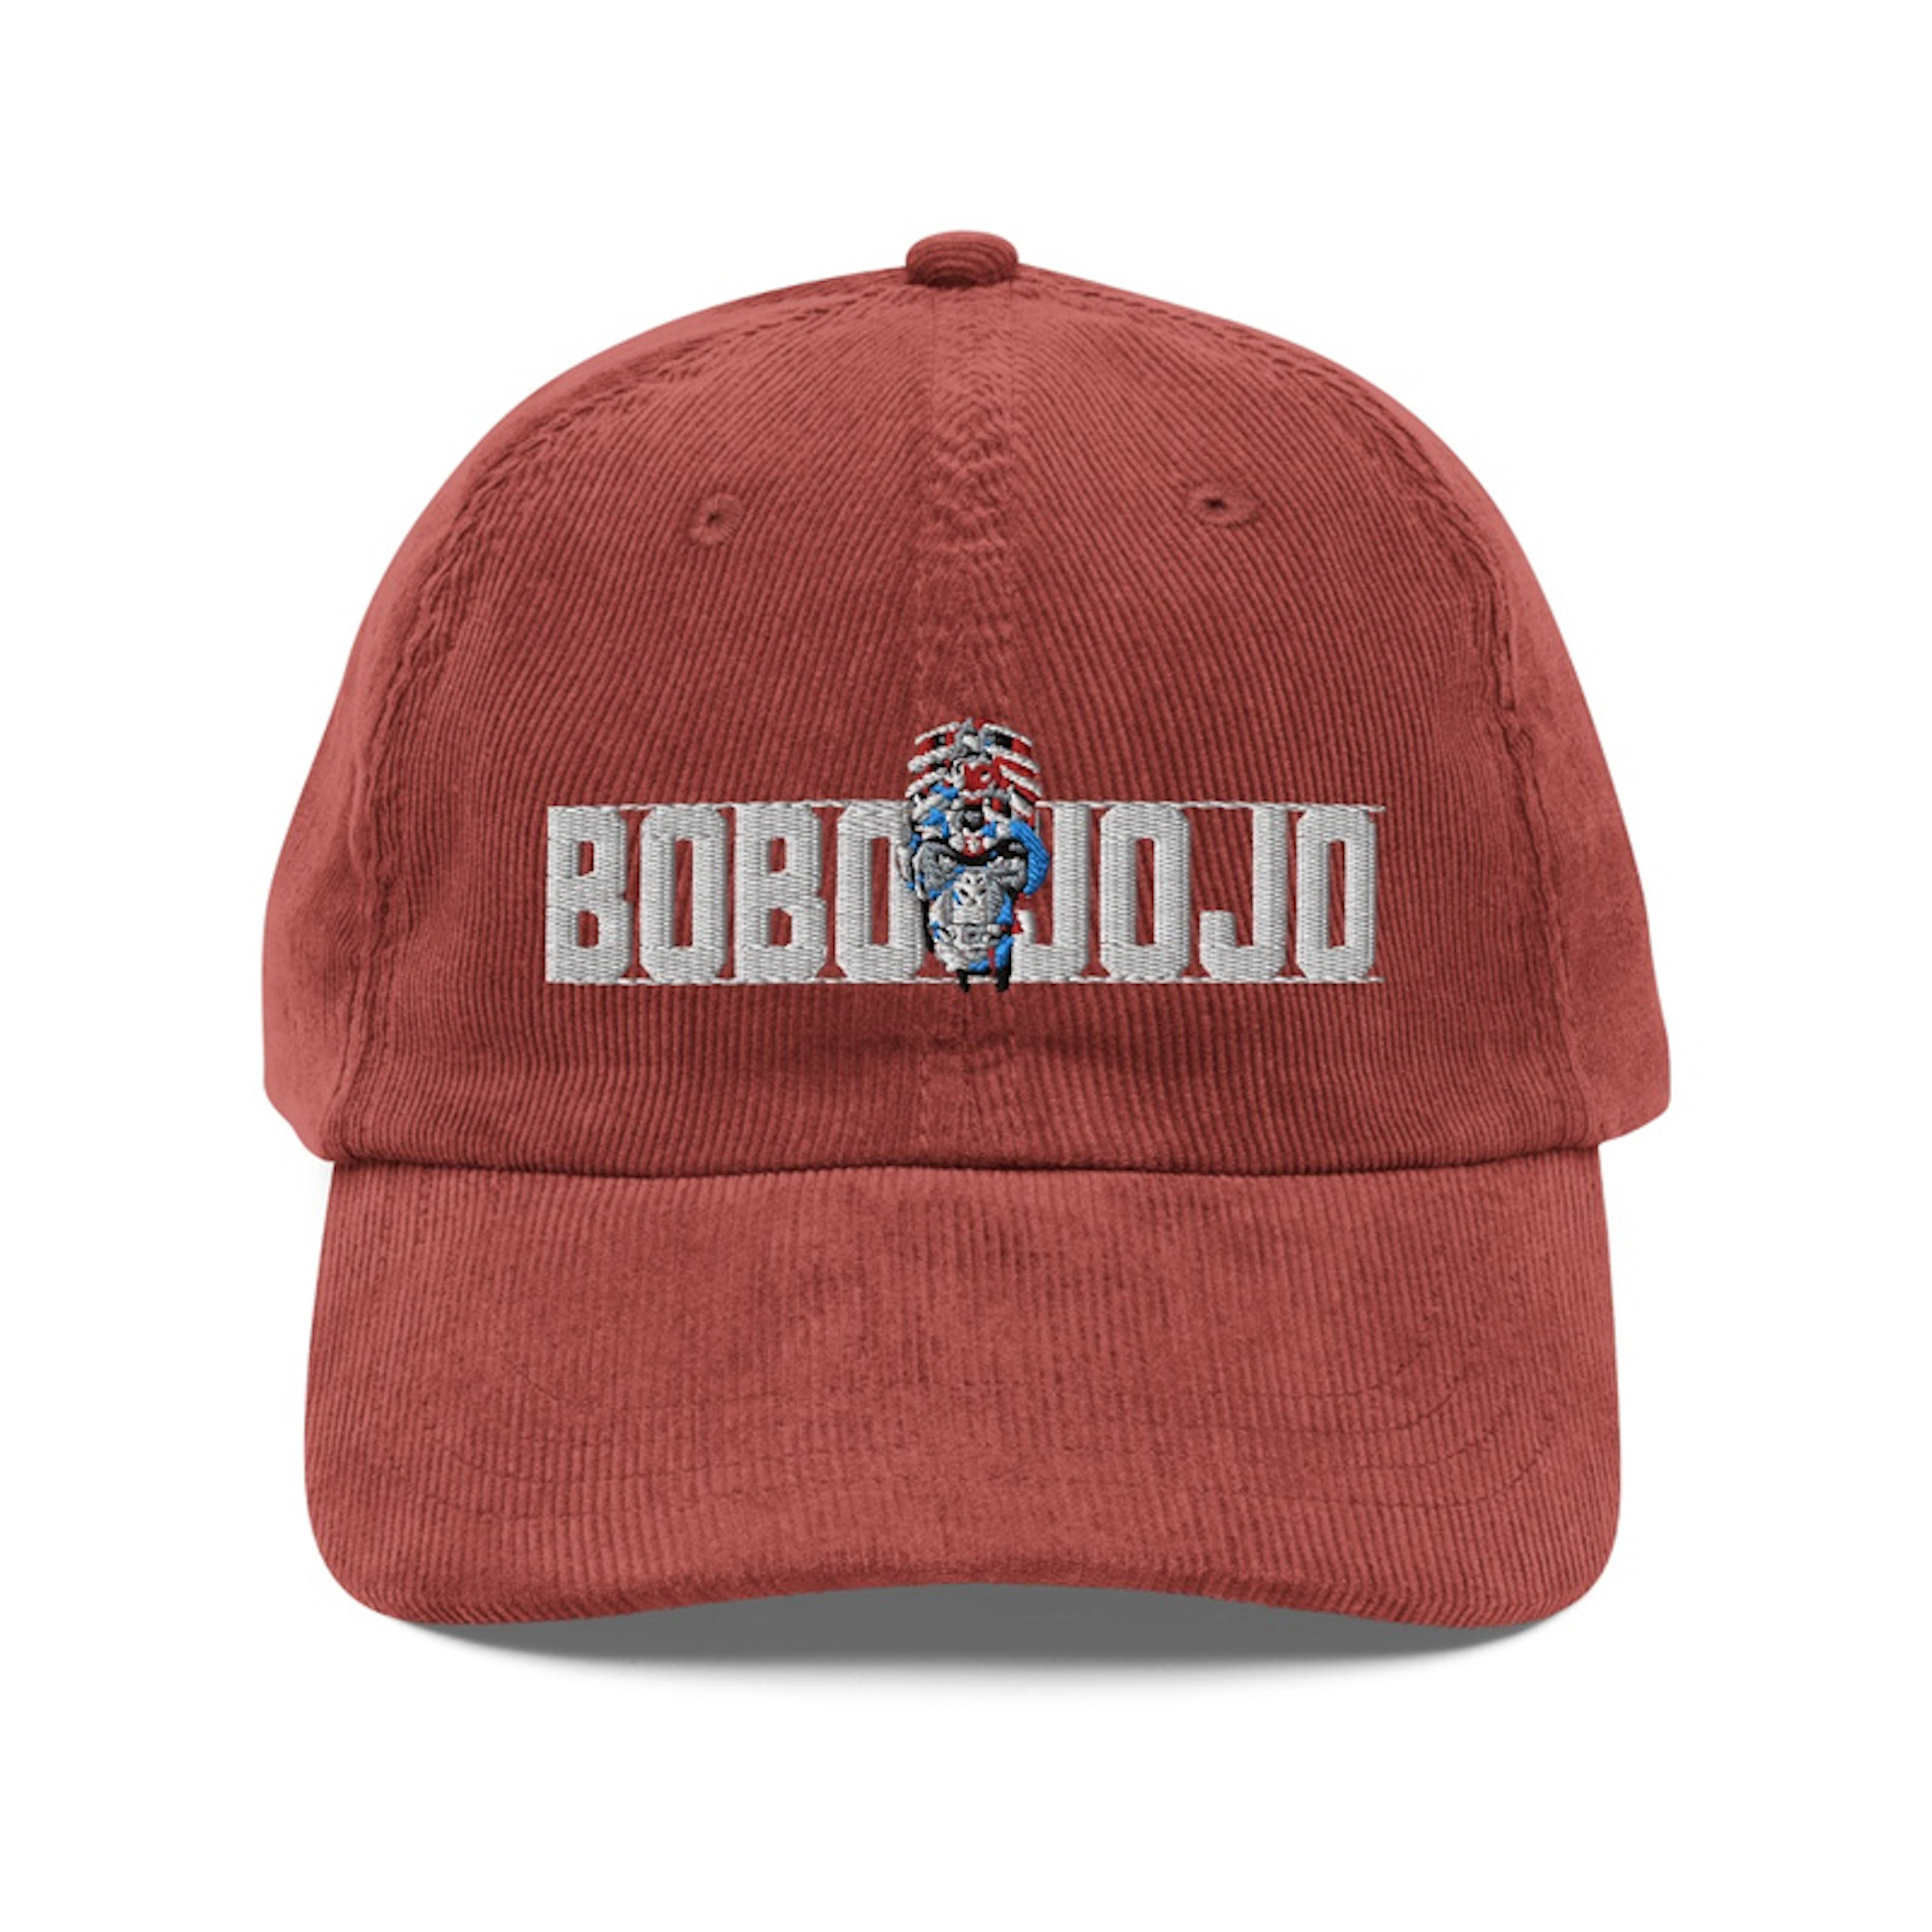 Bobo JoJo Vintage Corduroy Cap